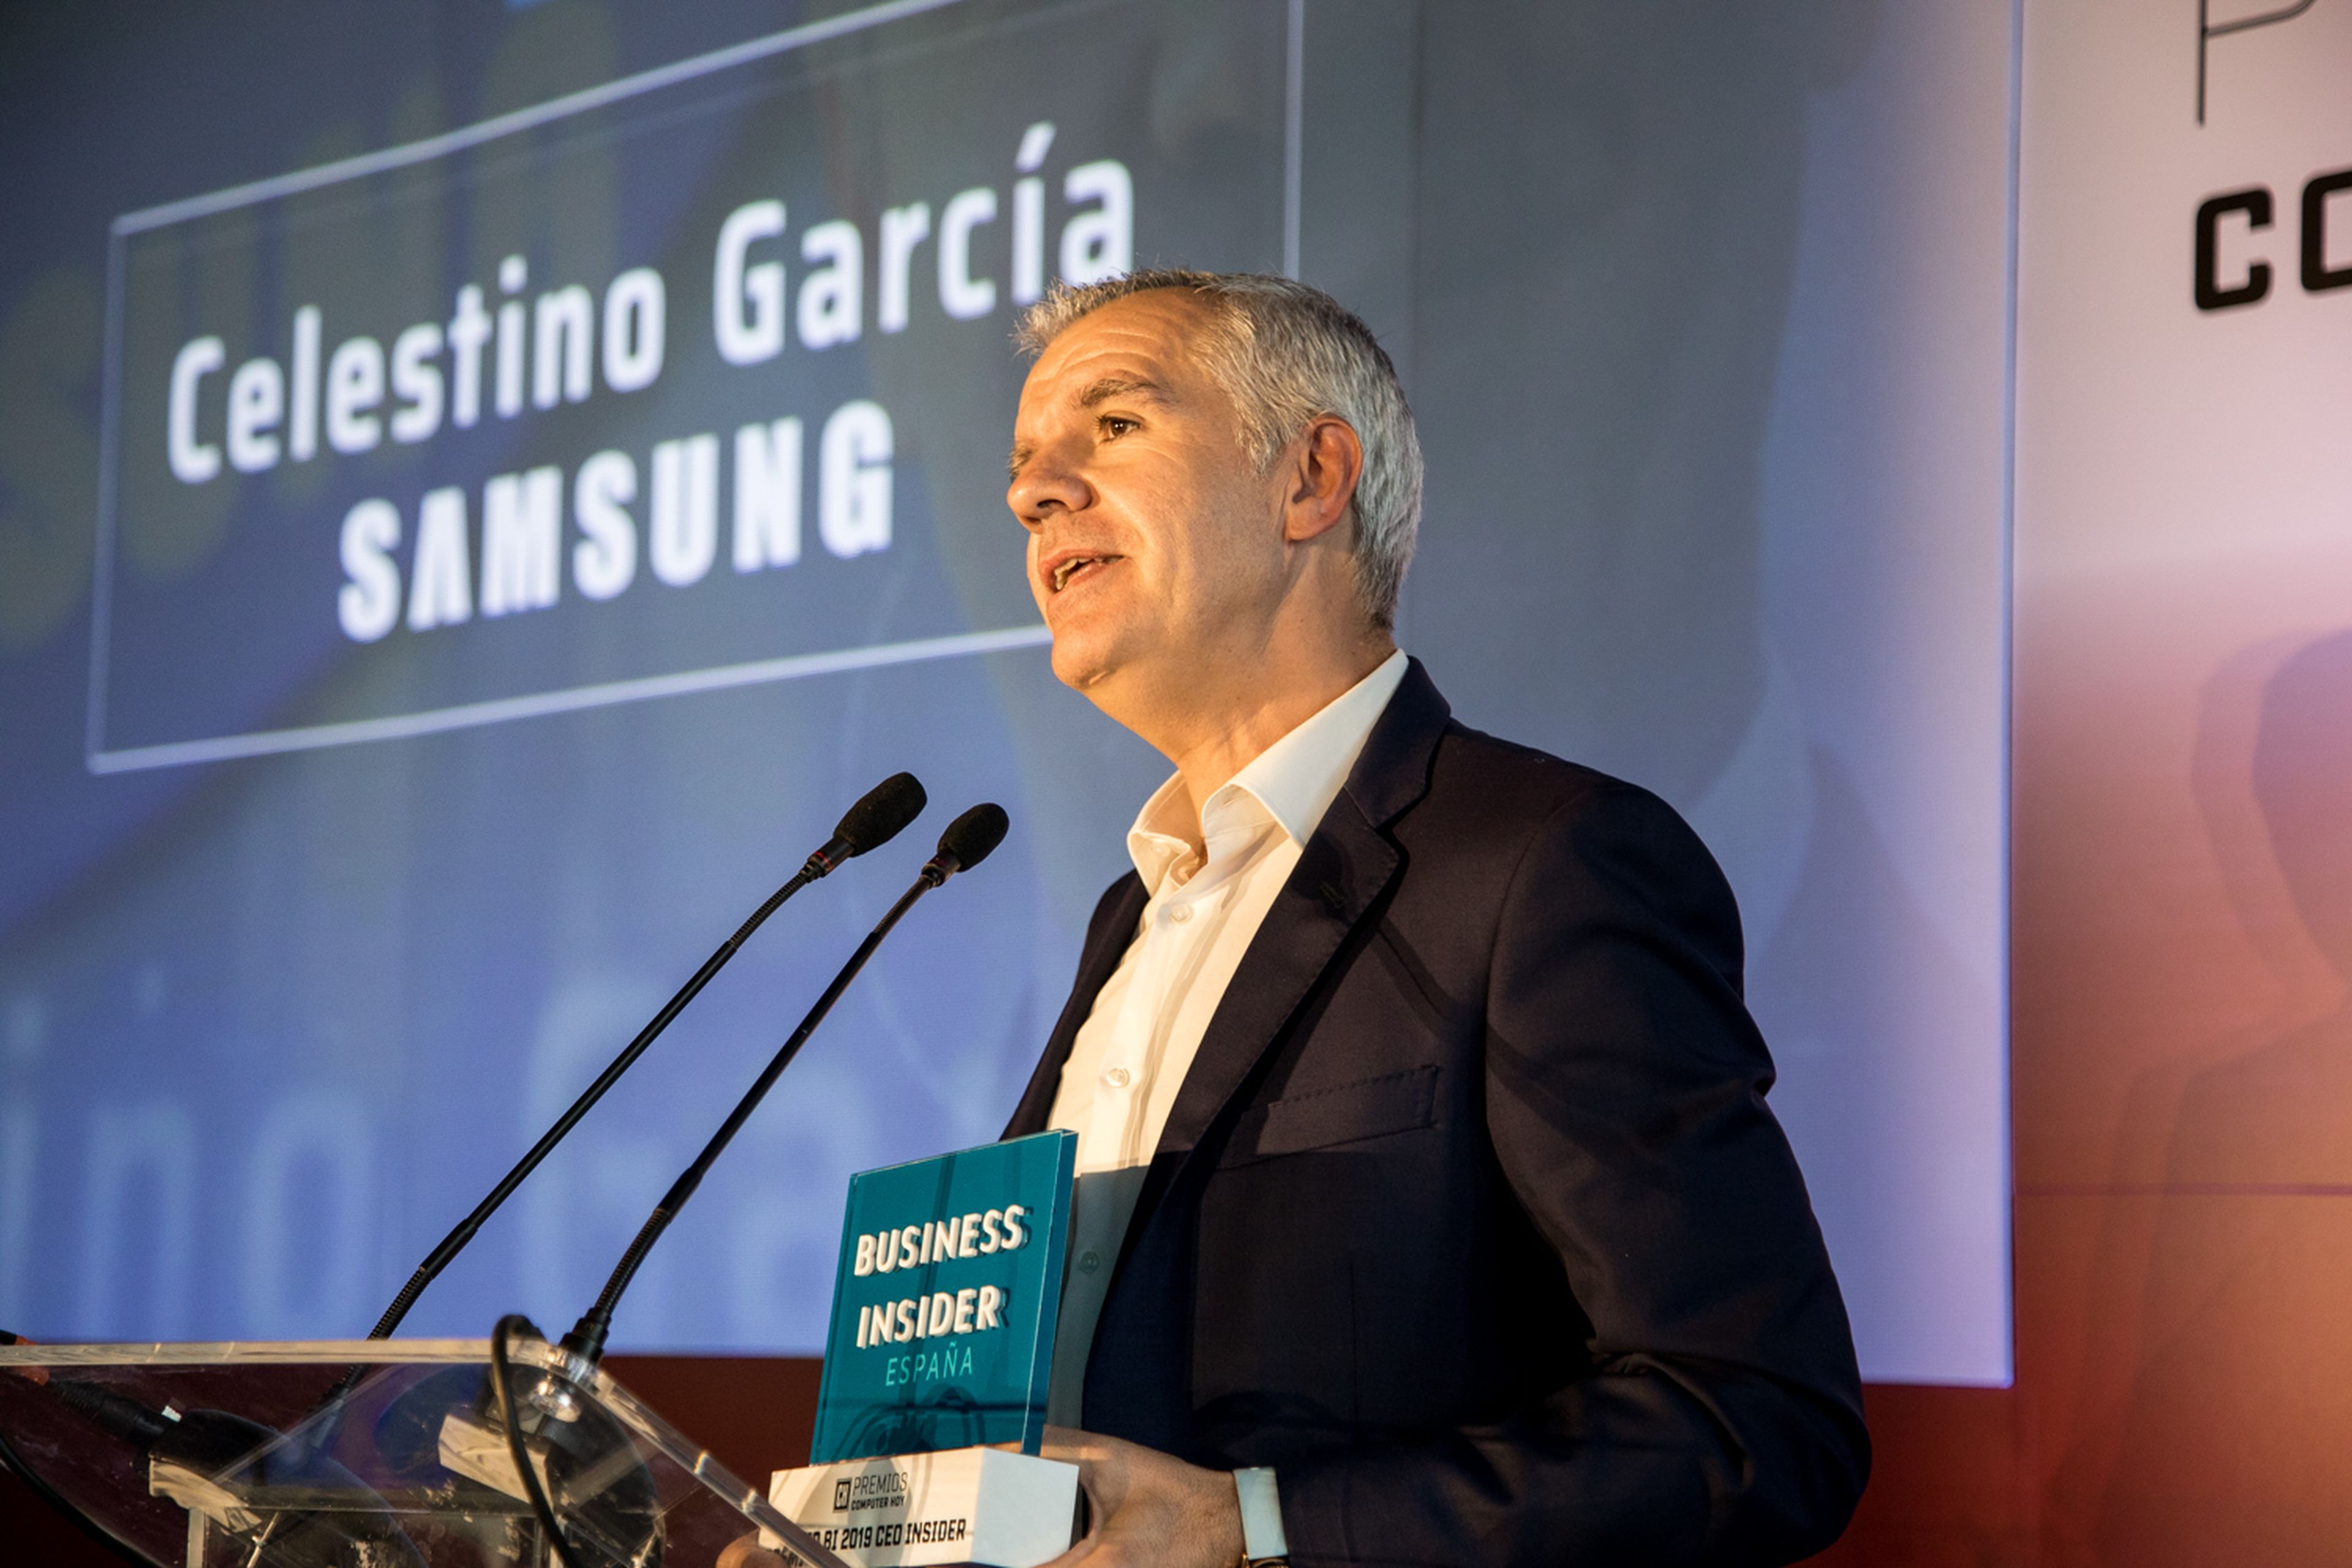 Celestino García, Samsung, galardonado con el premio CEO Insider